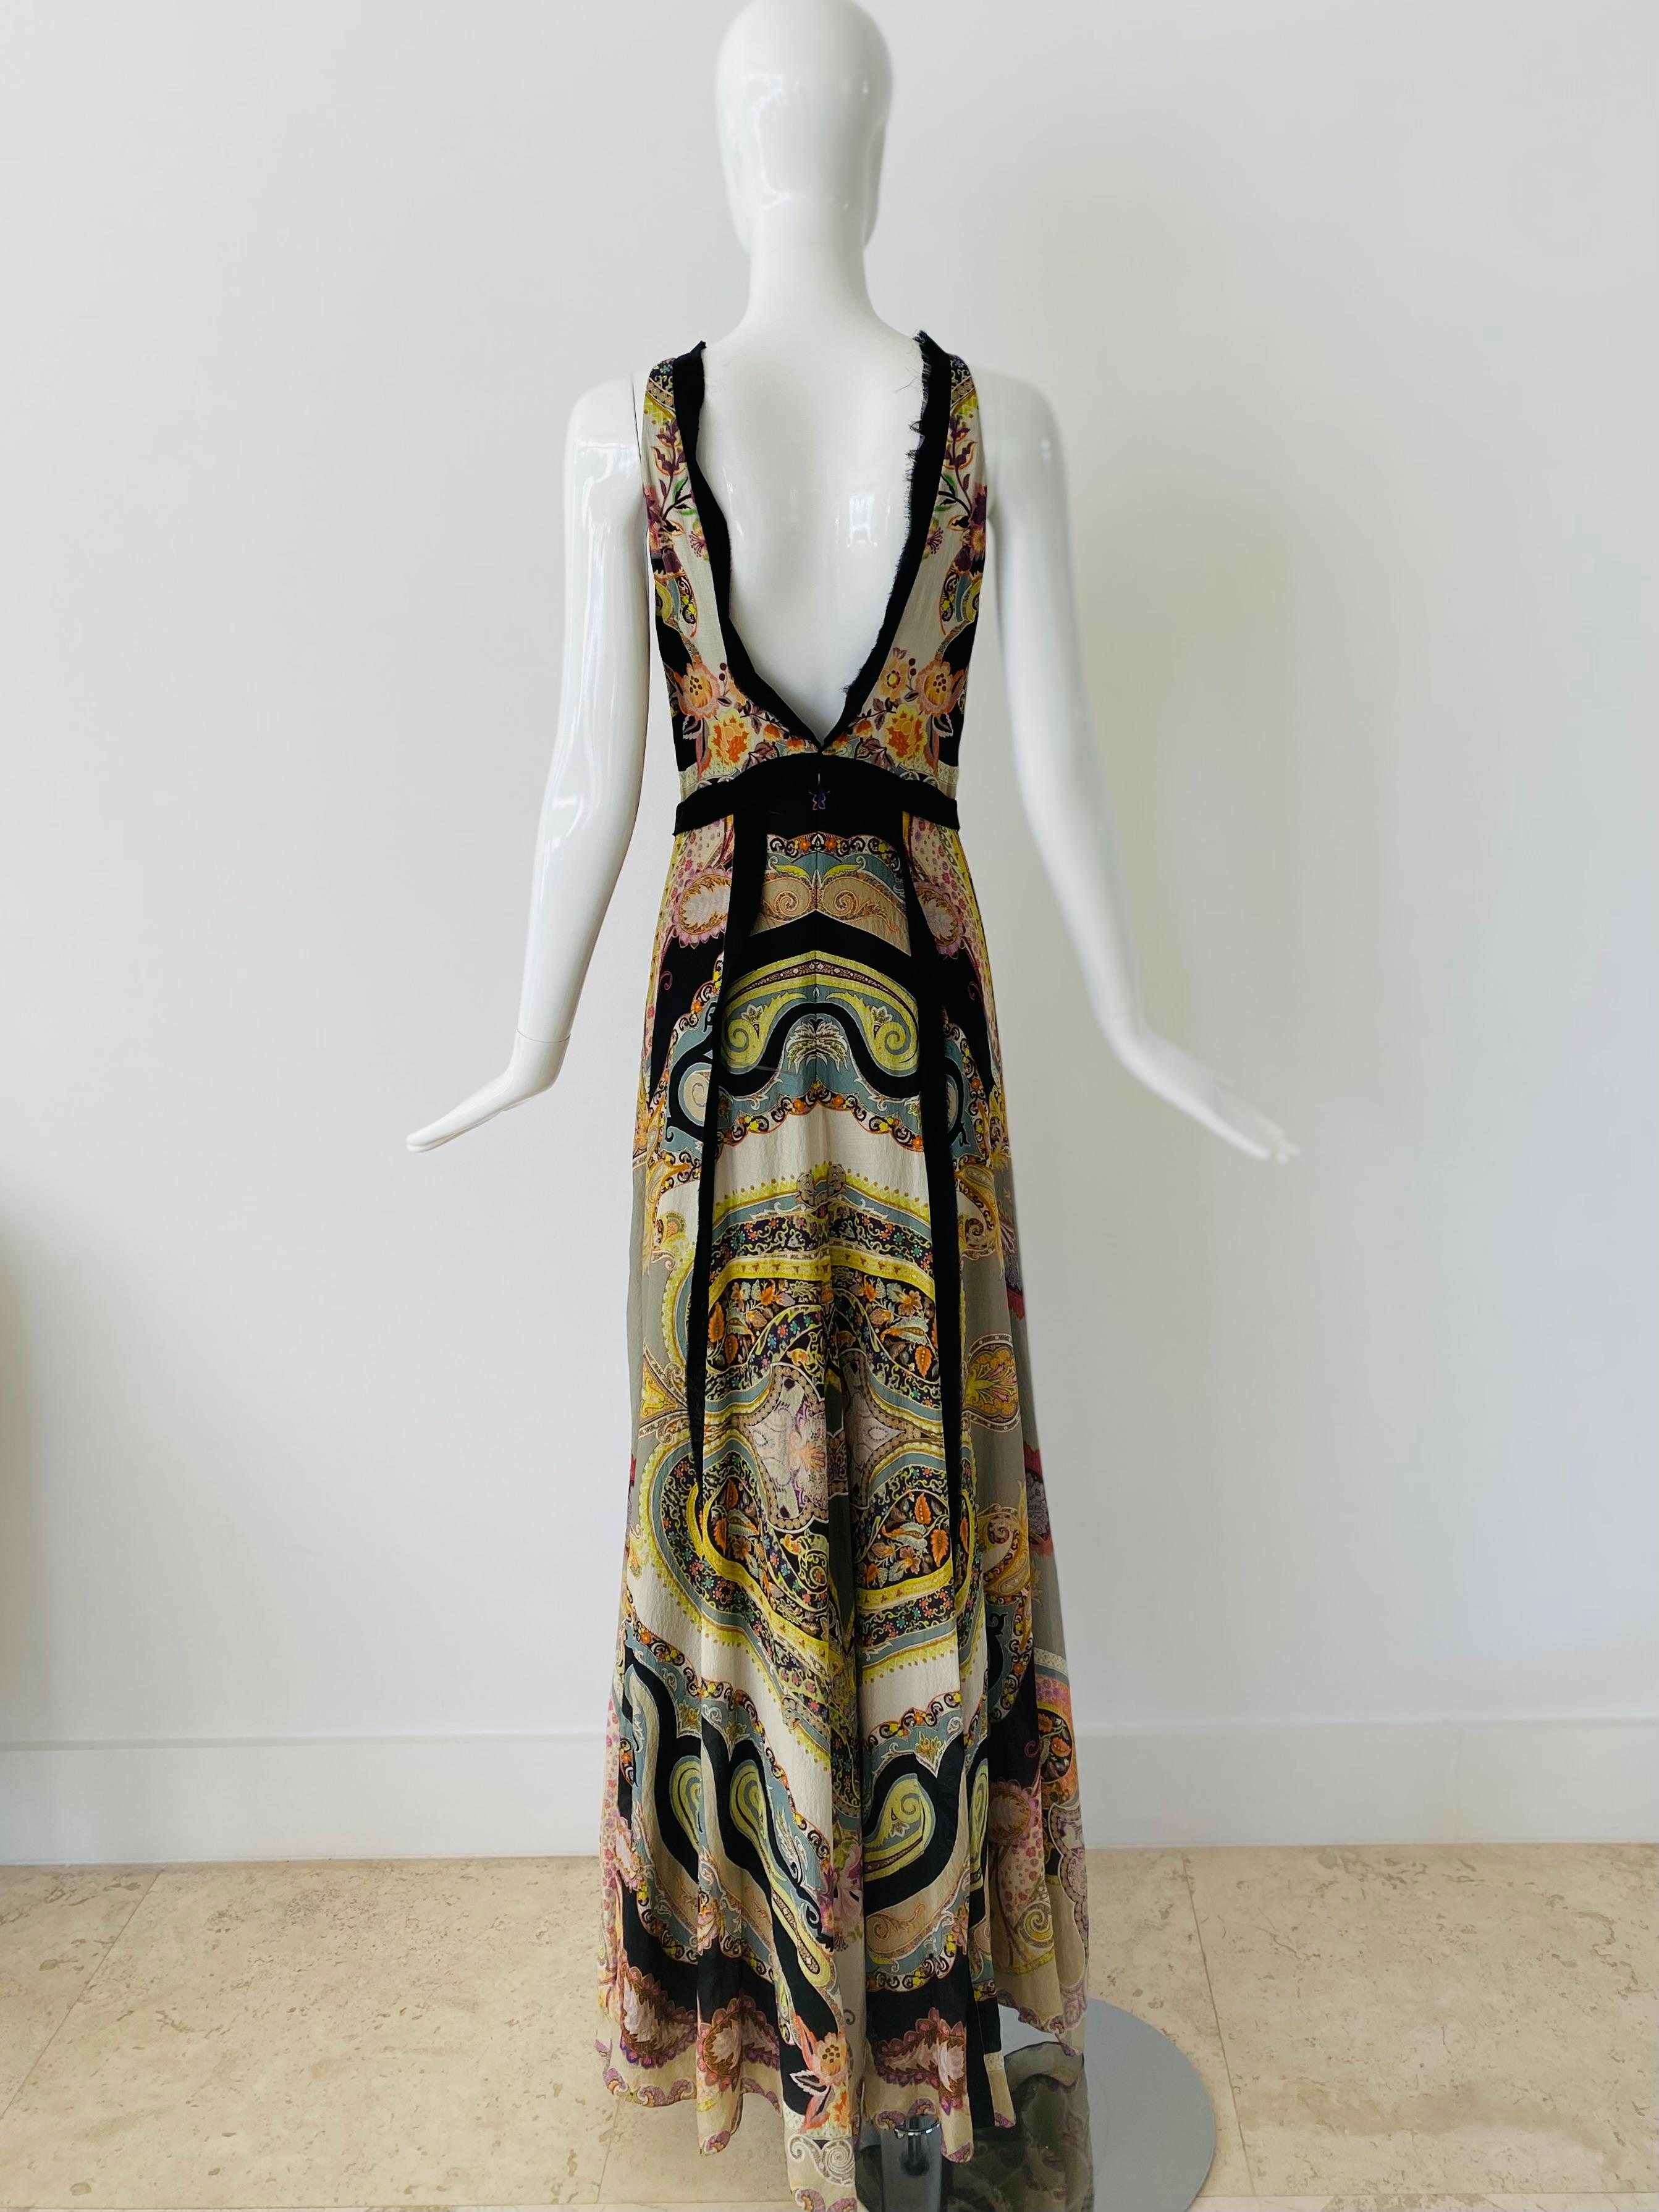 Etro Classic Hankerchief Silk Dress In Excellent Condition For Sale In Miami, FL